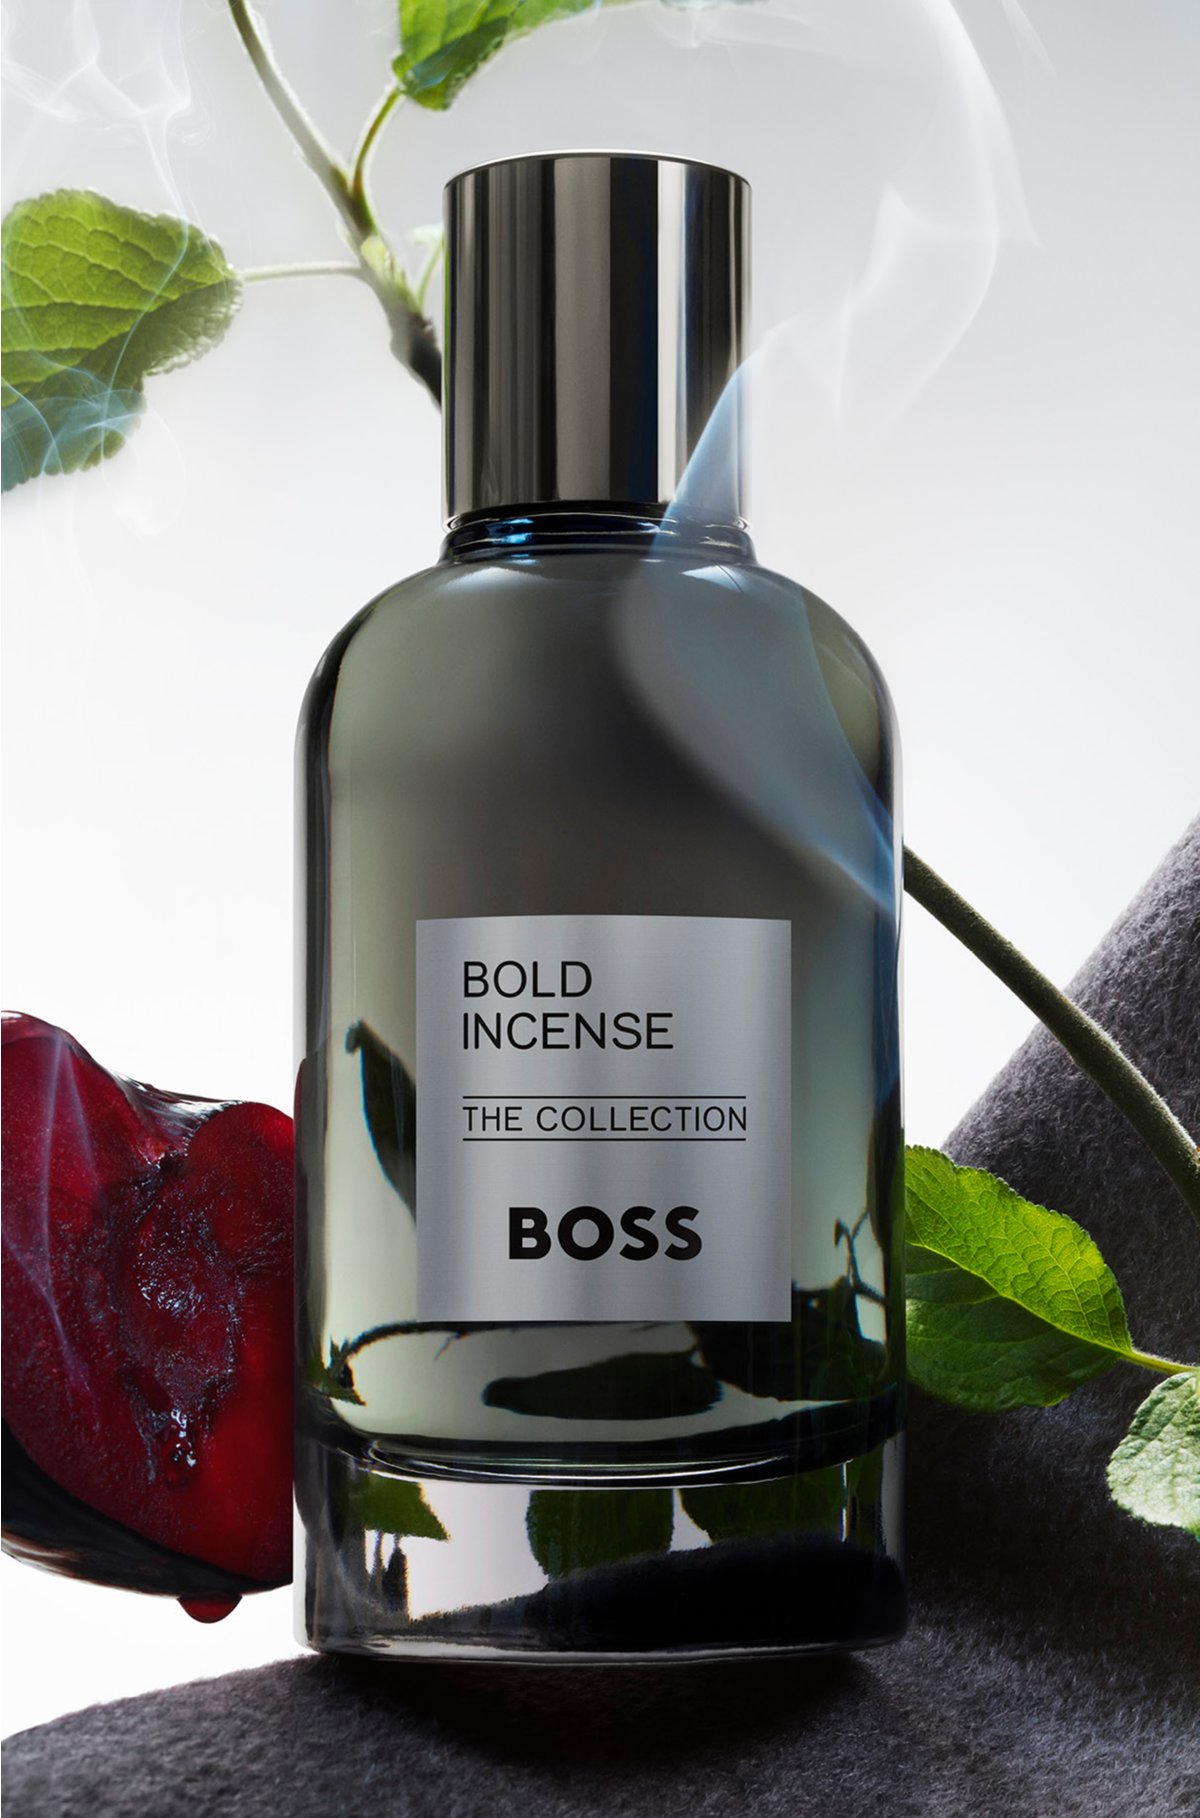 BOSS The Collection Bold Incense eau de parfum 100ml, Assorted-Pre-Pack